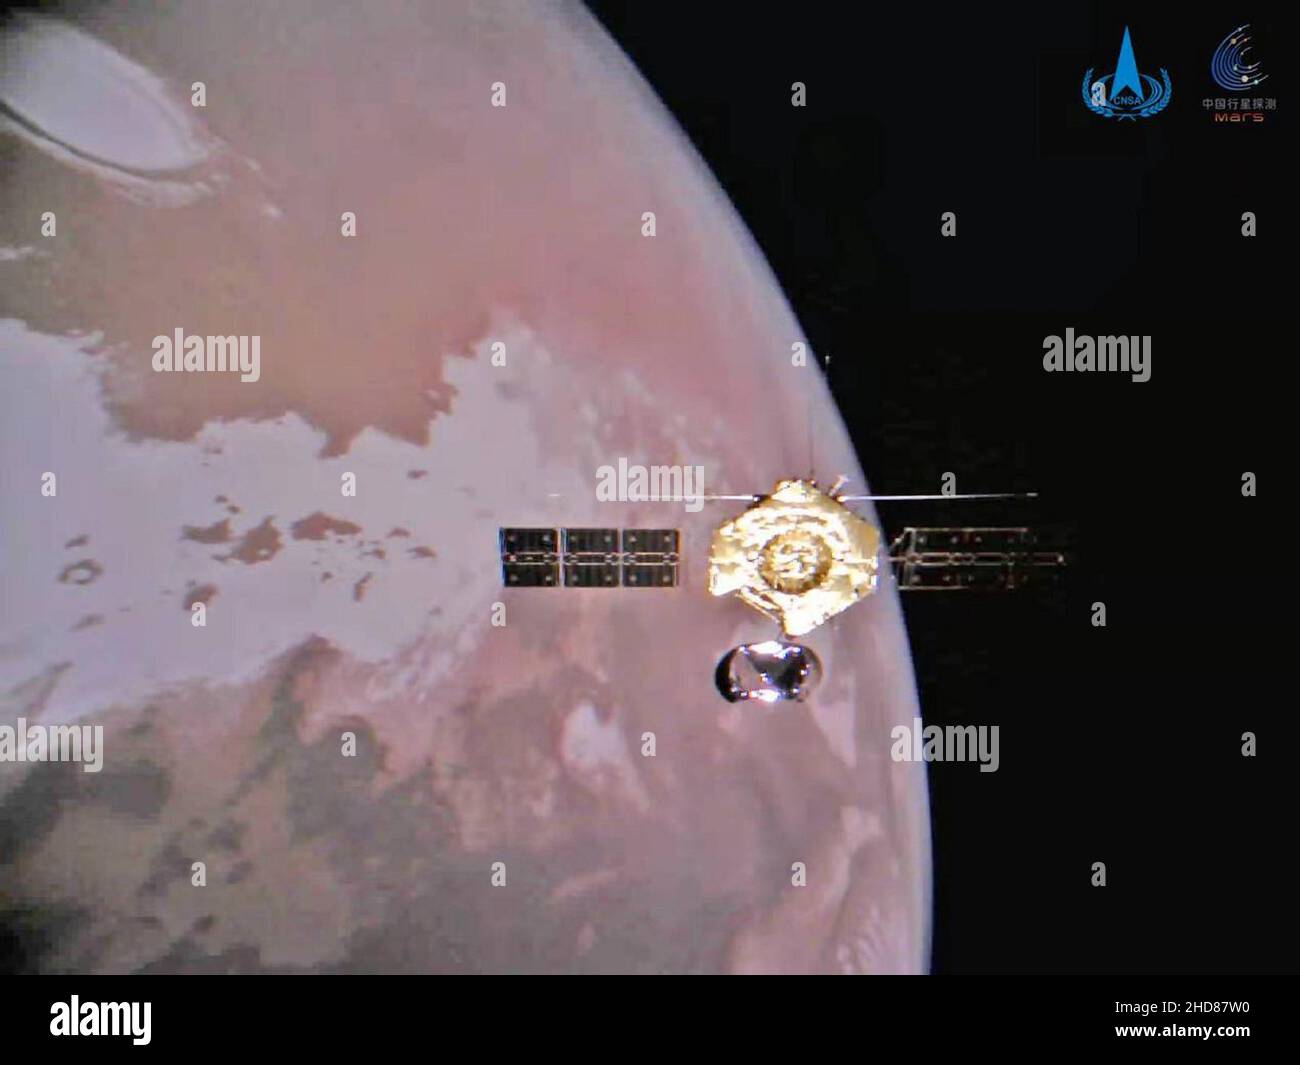 Peking, China. 04th Januar 2022. Die China National Space Administration veröffentlichte ein atemberaubendes mars-Selfie, das von der Tianwen-1-Mars-Orbiter über dem Roten Planeten aufgenommen wurde, nachdem sie eine kleine Kamera losgelassen und Fotos per WLAN zur Missionskontrolle gesendet hatte. Die Fotos zeigen den Orbiter, der in einer Umlaufbahn um den Roten Planeten fliegt, die Eisdecke auf dem Nordpol des Mars und eine Szene einer kargen Marsoberfläche. Foto von CNSA/UPI Kredit: UPI/Alamy Live News Stockfoto